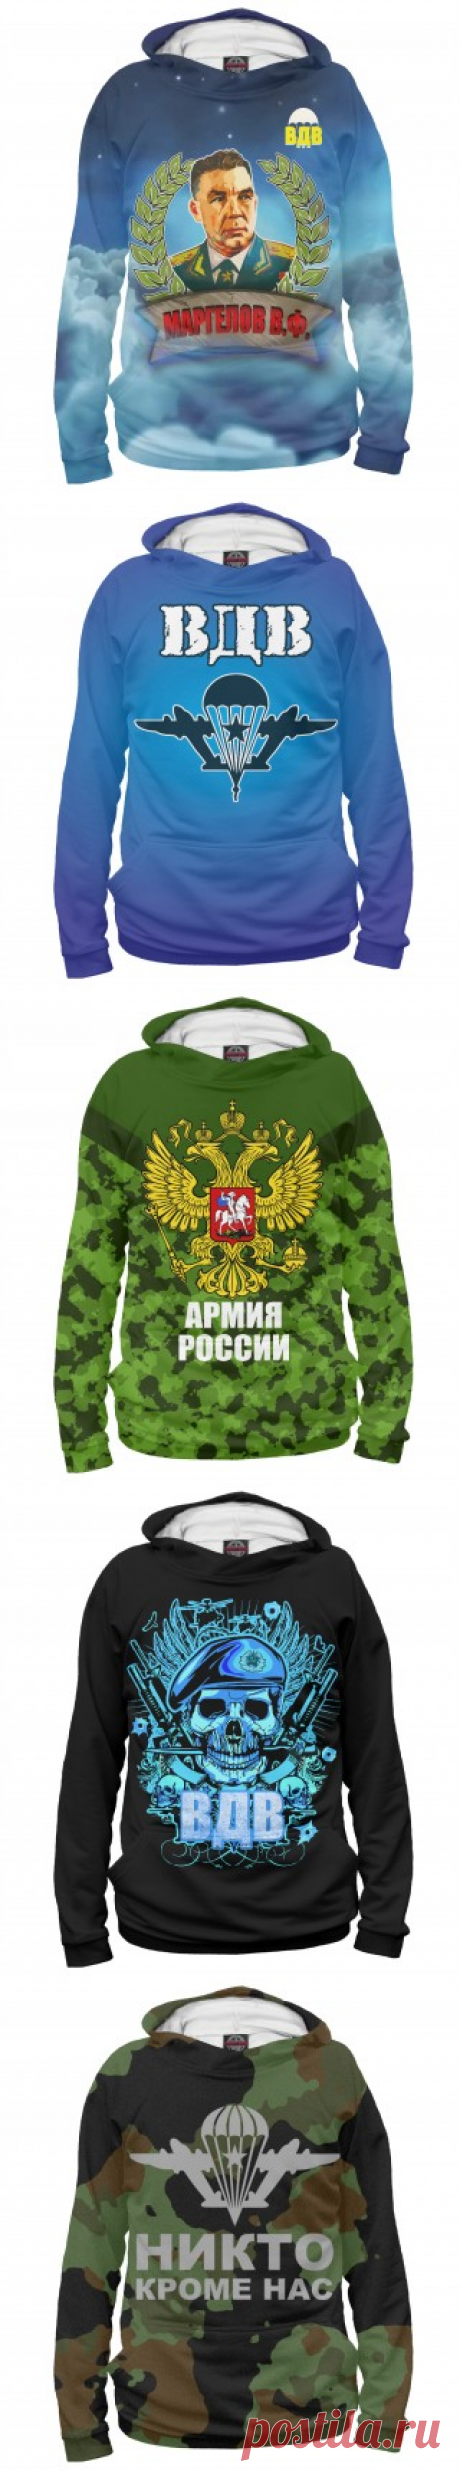 Коллекция Армия России | Студия одежды нового формата!